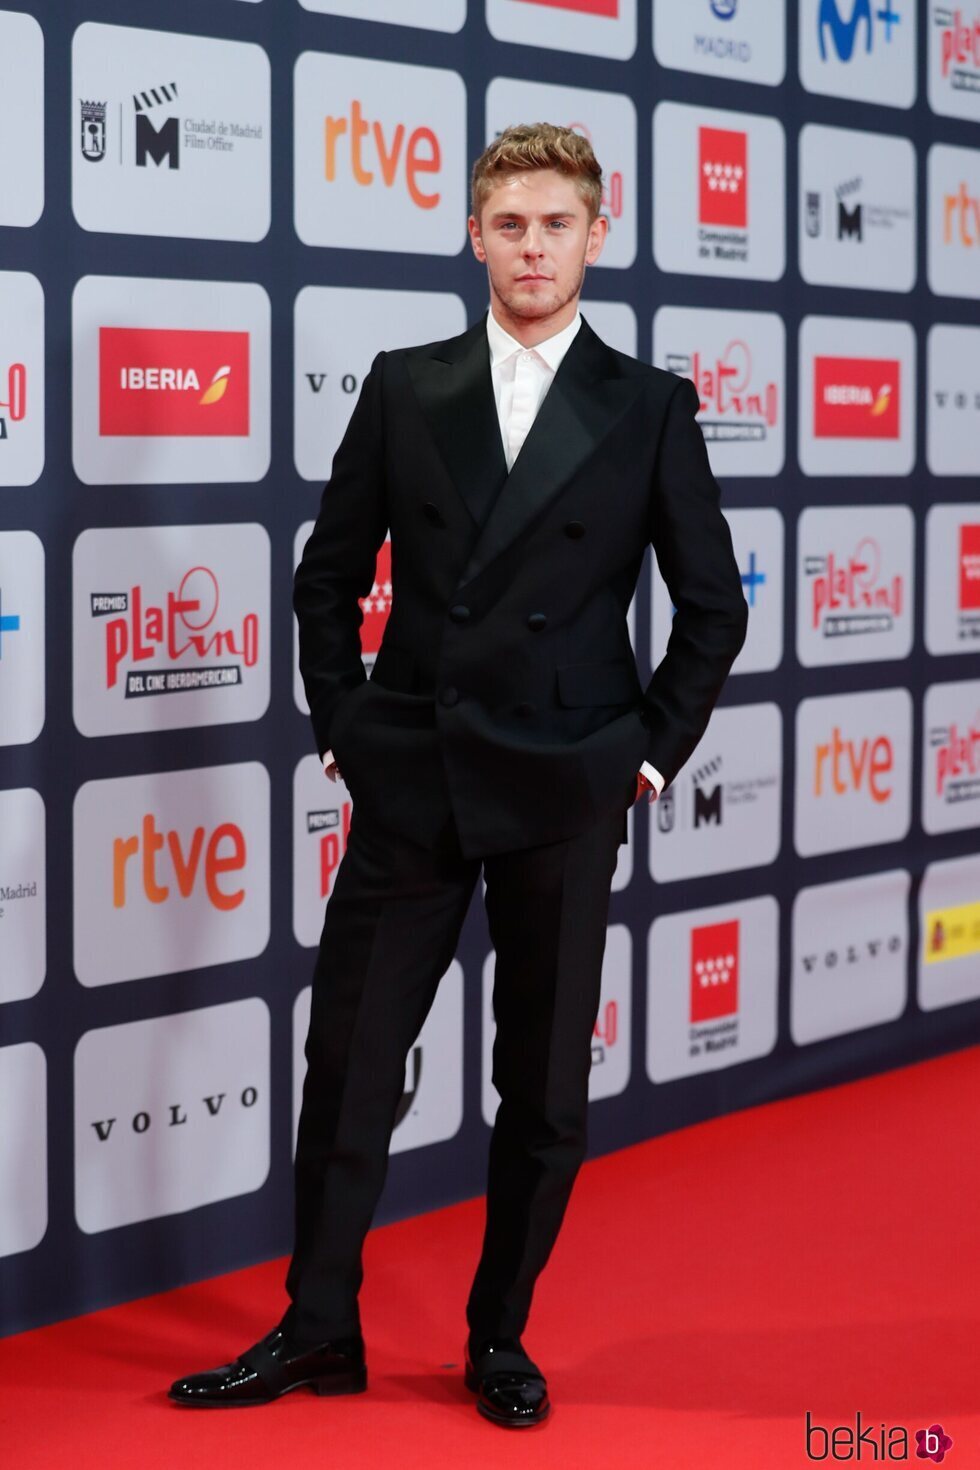 Patrick Criado en la alfombra roja de los Premios Platino 2021